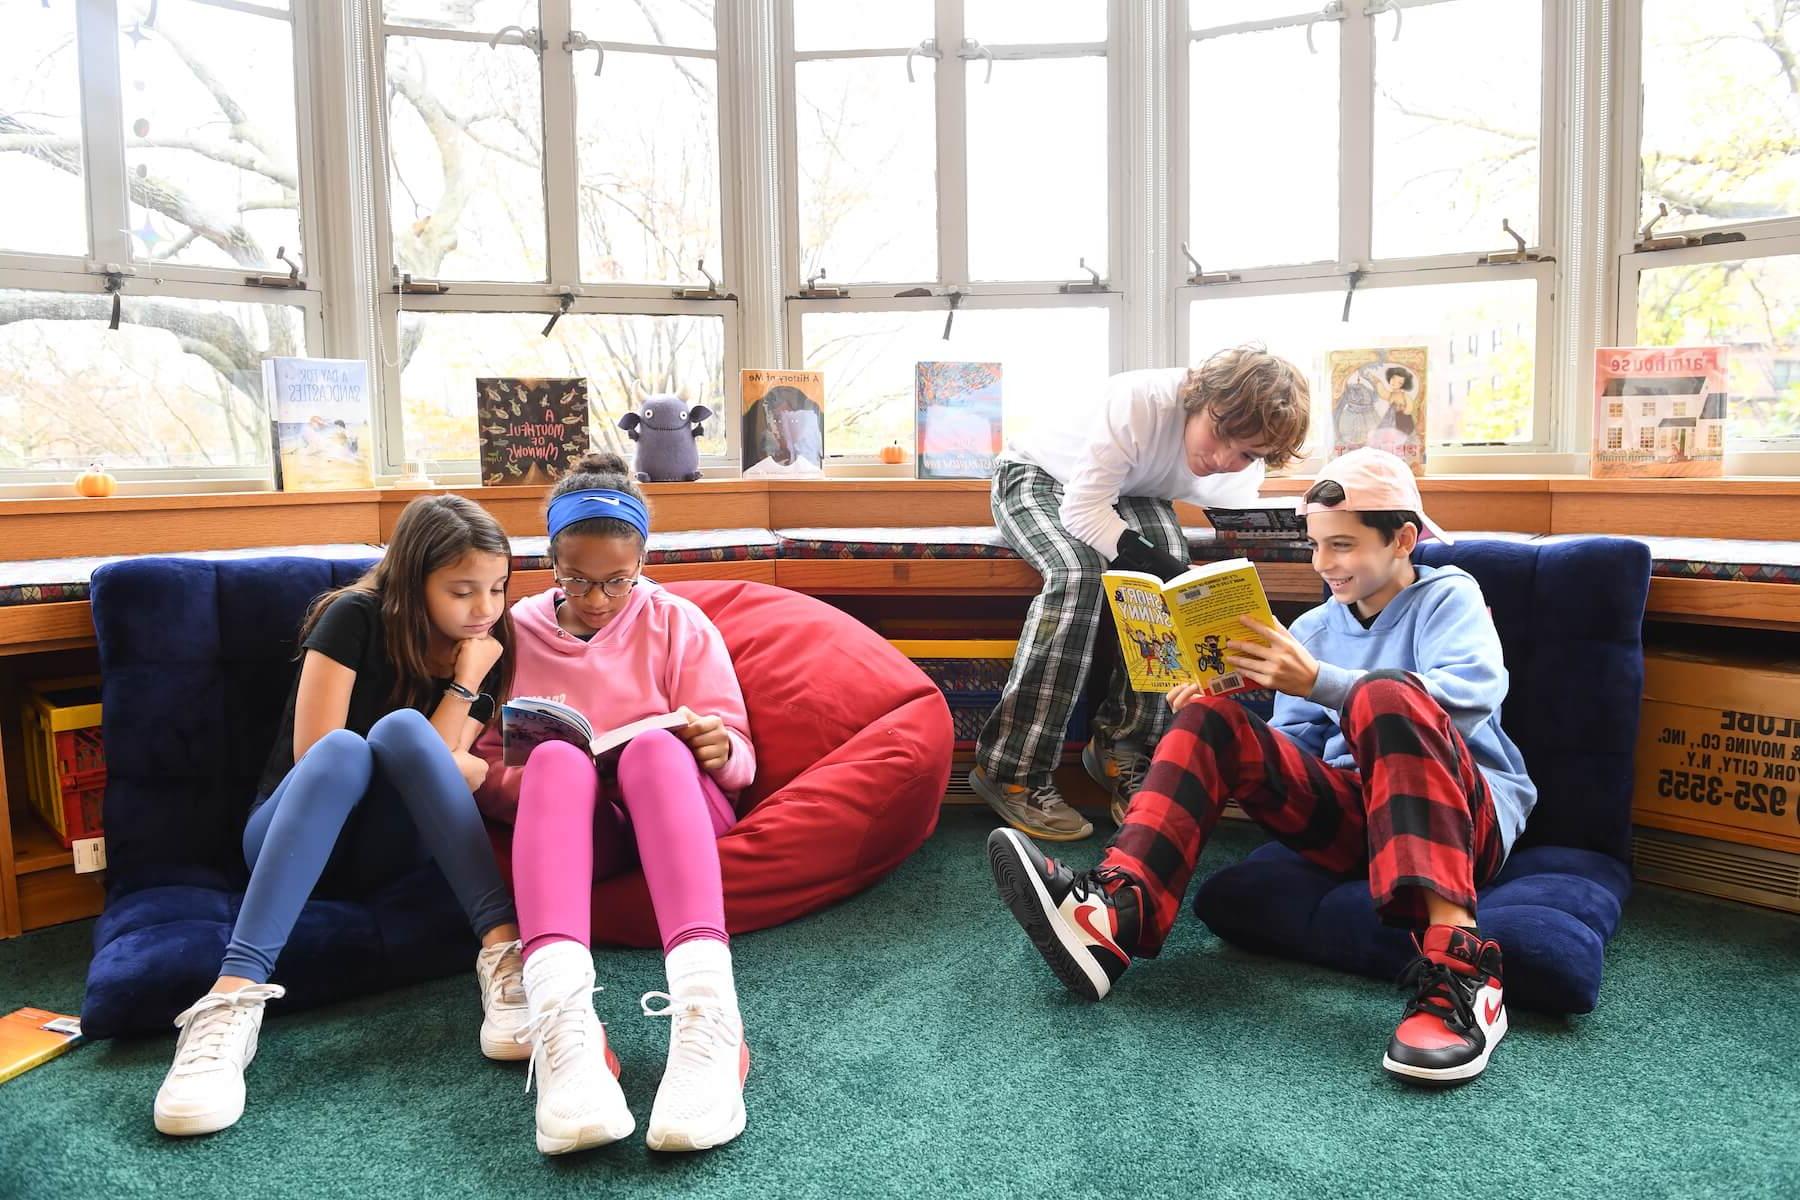 道德文化菲尔德斯顿学校五年级学生在图书馆分享书籍